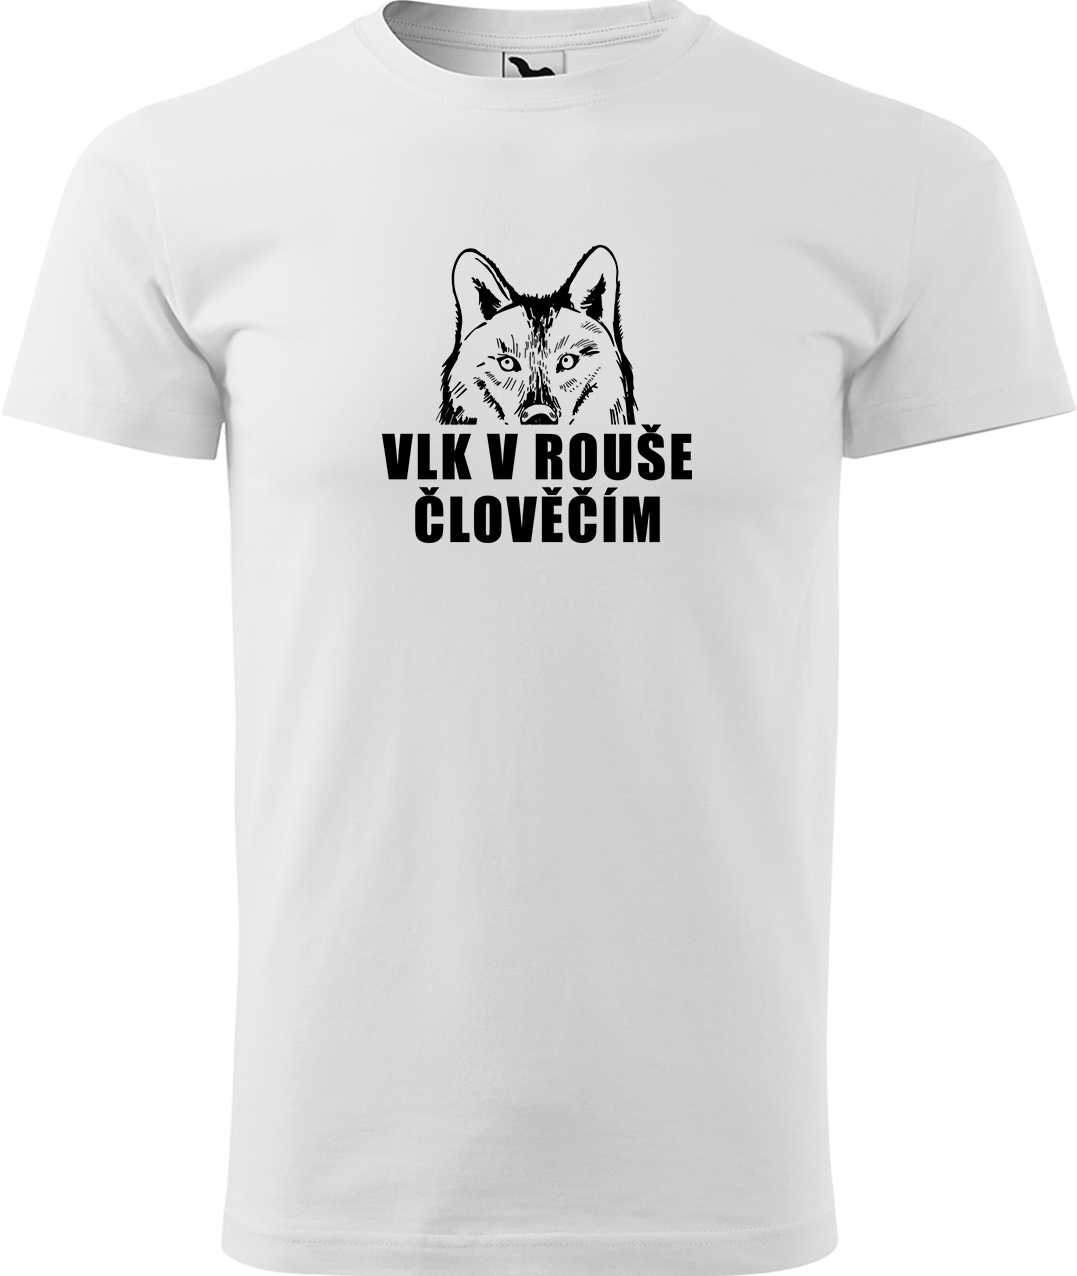 Pánské tričko s vlkem - Vlk v rouše člověčím Velikost: S, Barva: Bílá (00), Střih: pánský